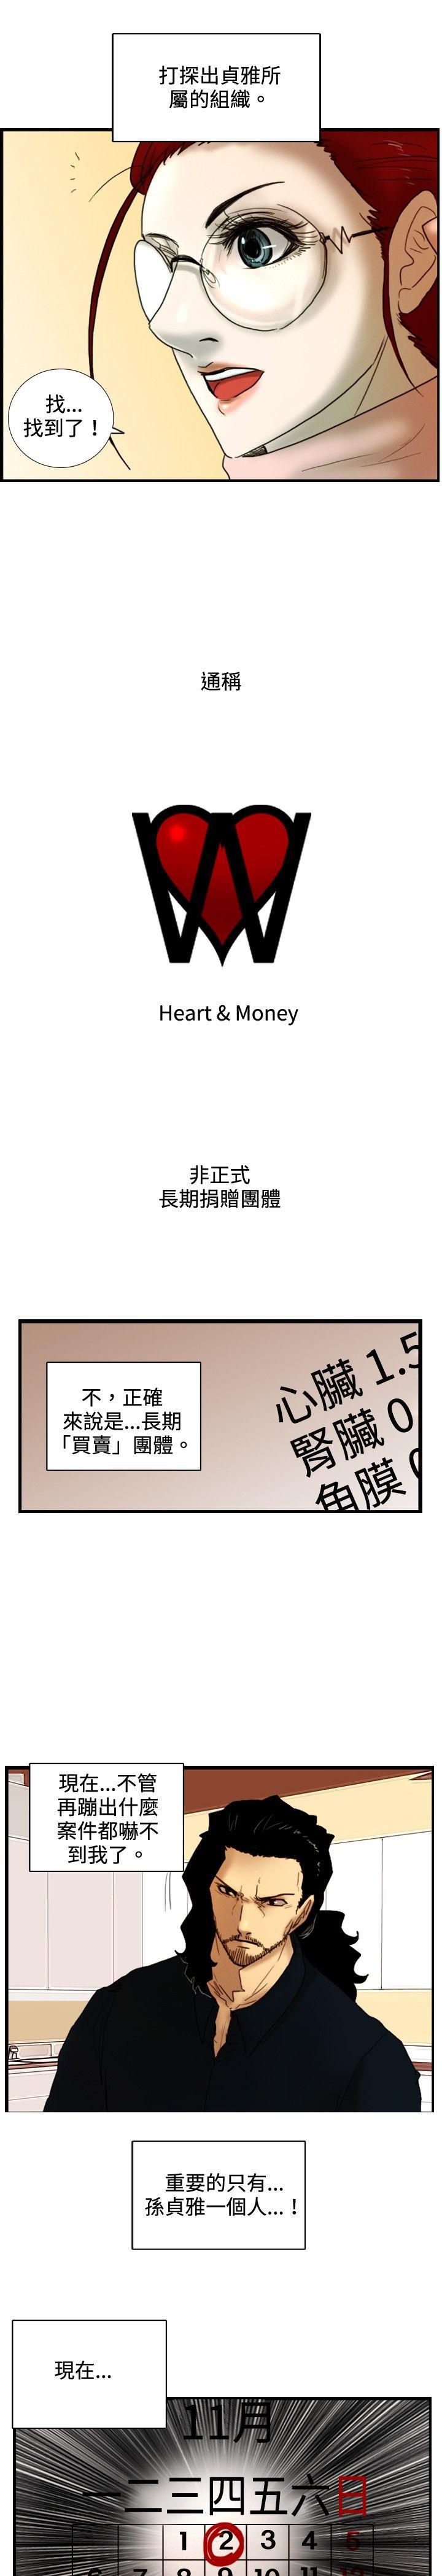 韩国污漫画 覺醒 第28话暴风雨前夕 25